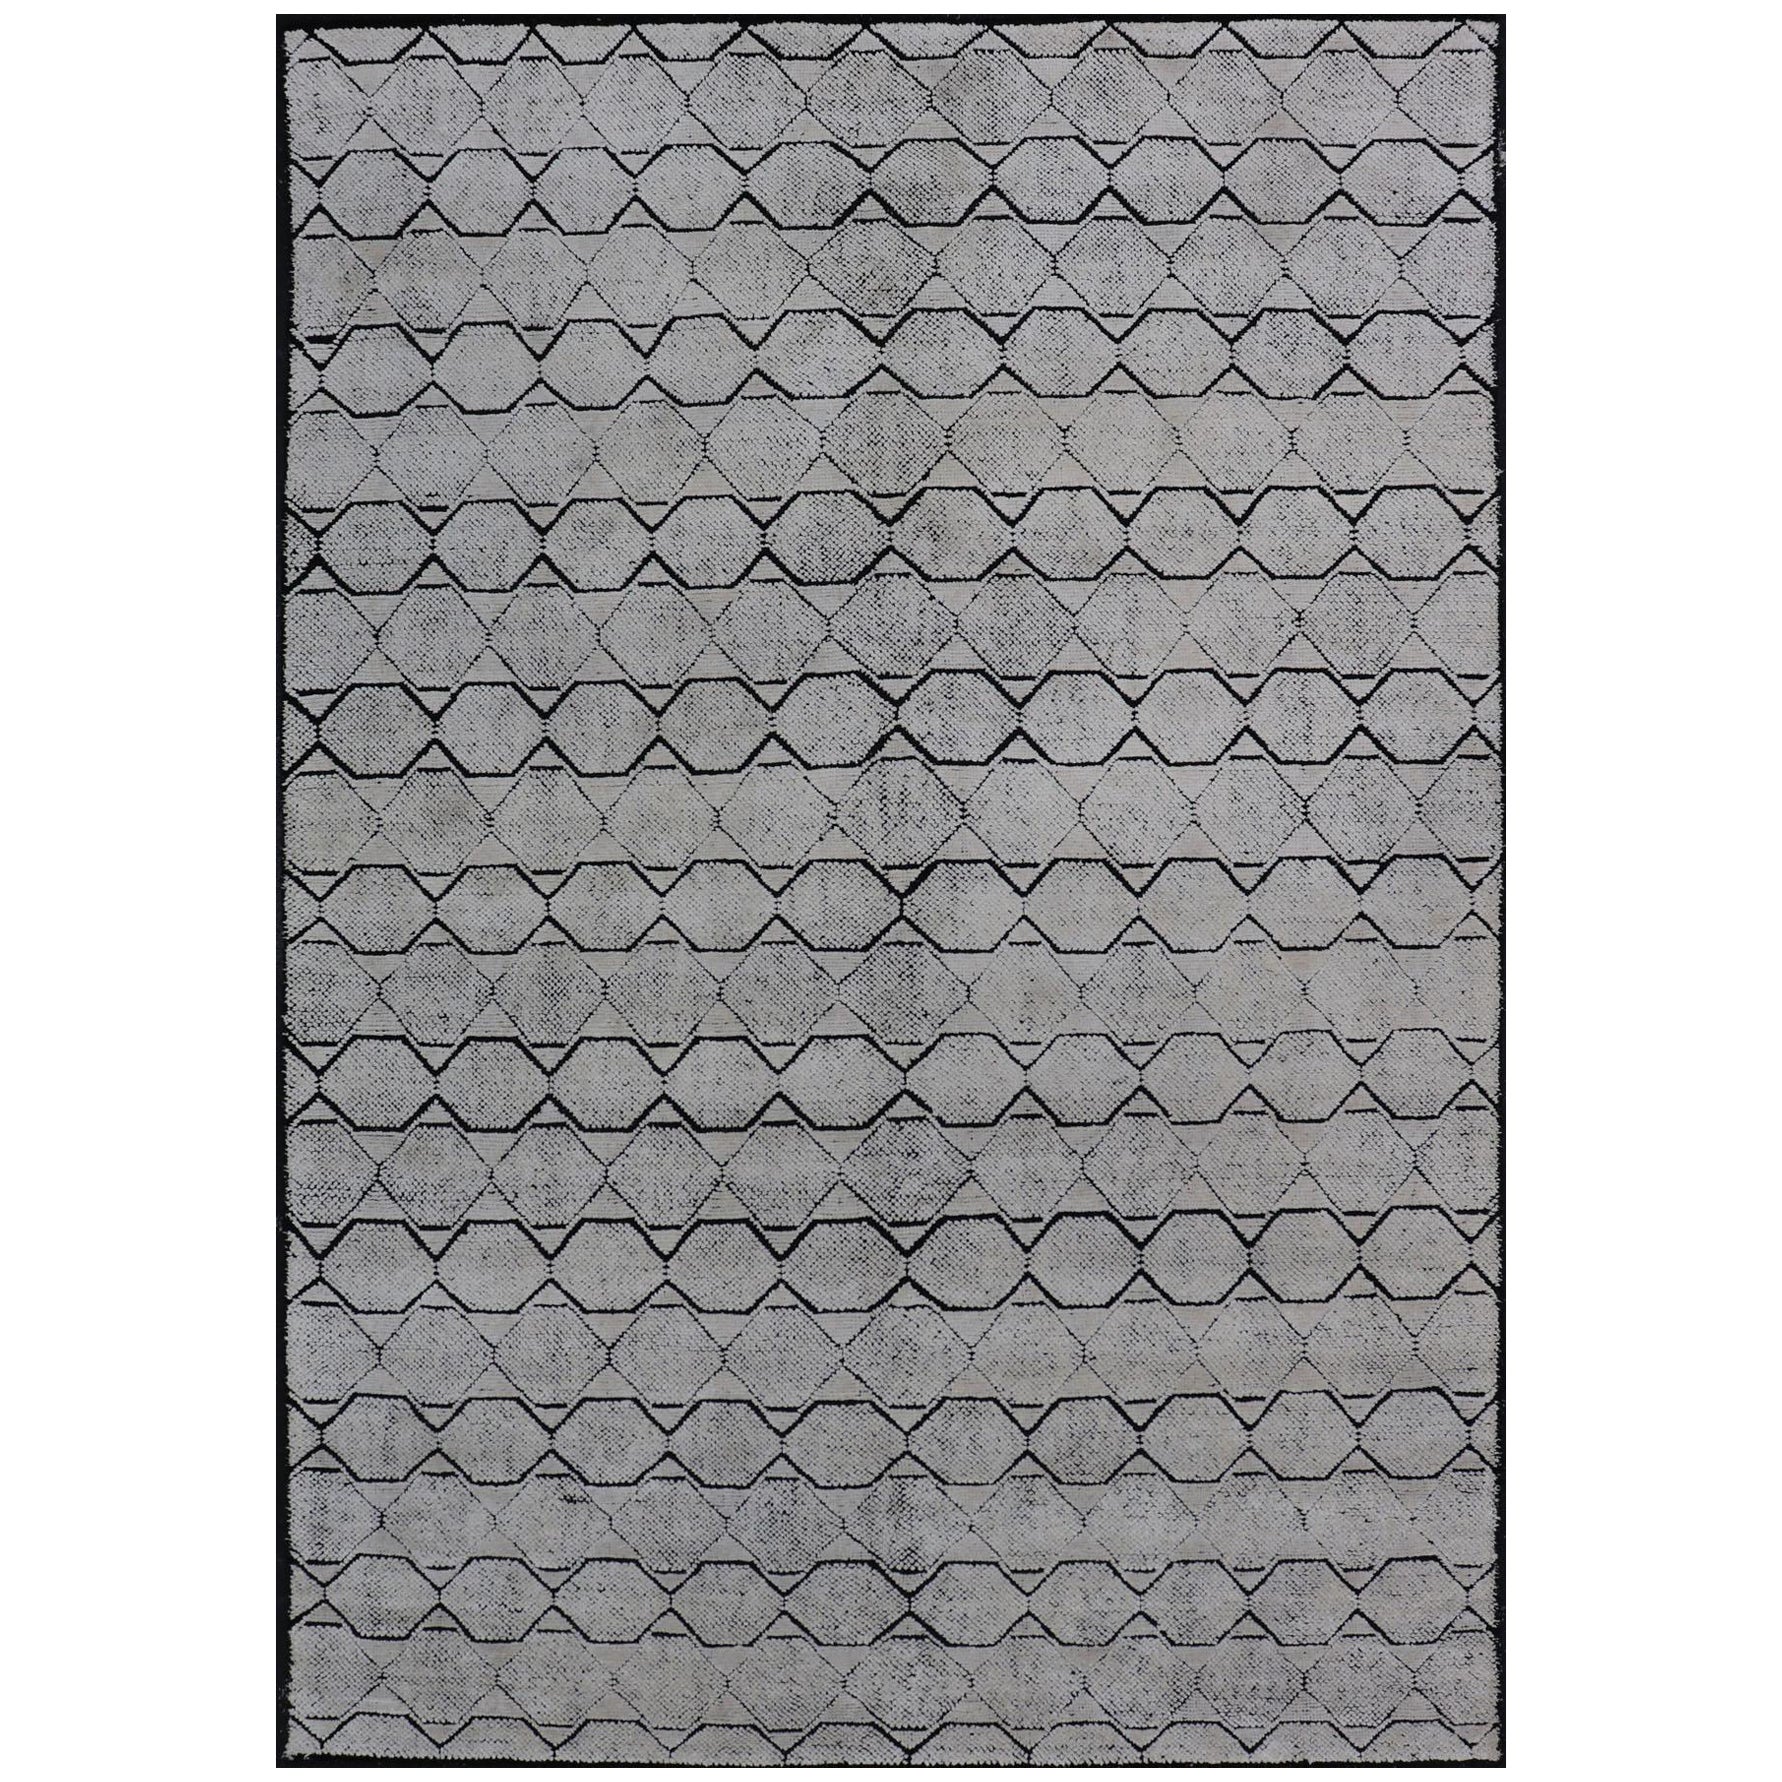 Indischer moderner Teppich in Elfenbein und Schwarz mit geometrischem und minimalistischem Design